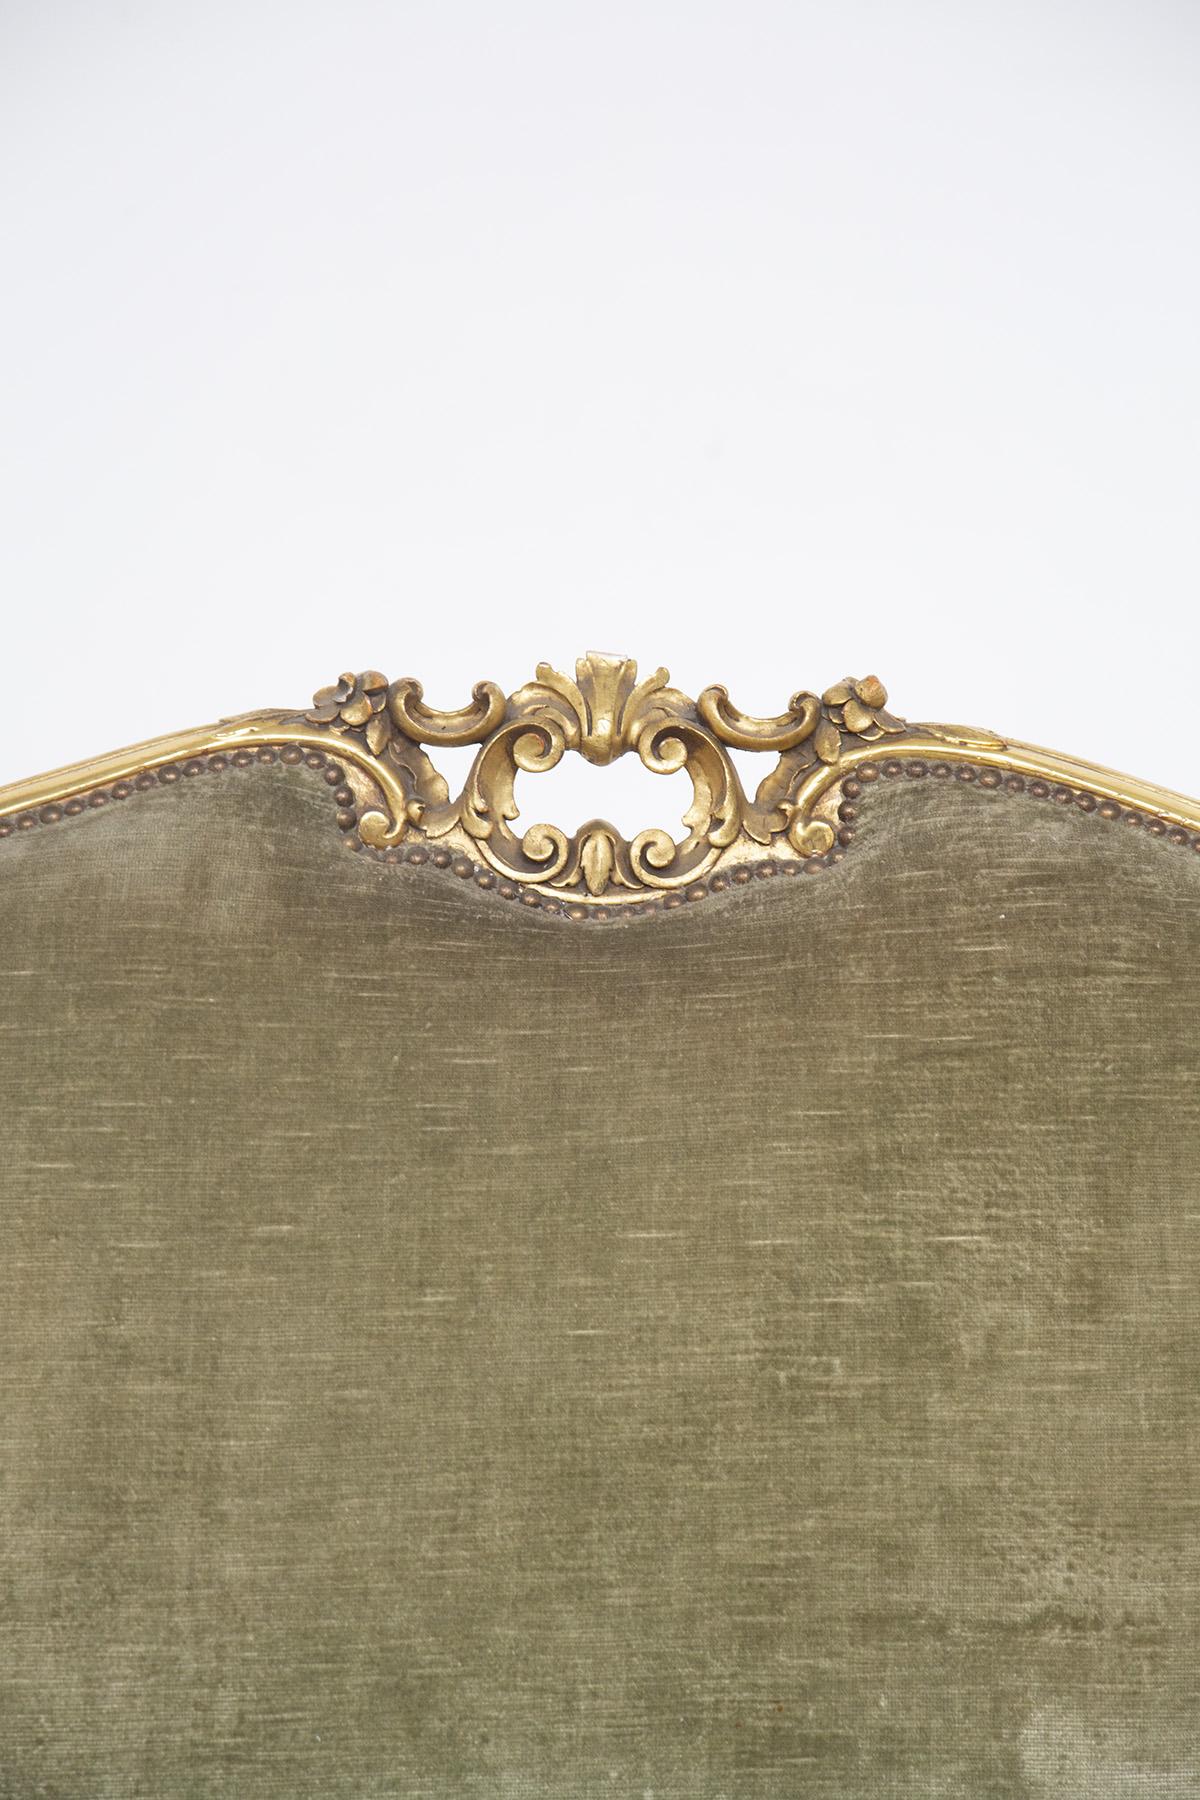 Le canapé vintage est de style Louis XVI et a été fabriqué en Italie au début des années 1900. Le grand canapé à trois places est recouvert du magnifique velours vert d'origine. Le bois doré est décoré de motifs et de détails typiques de ce style.